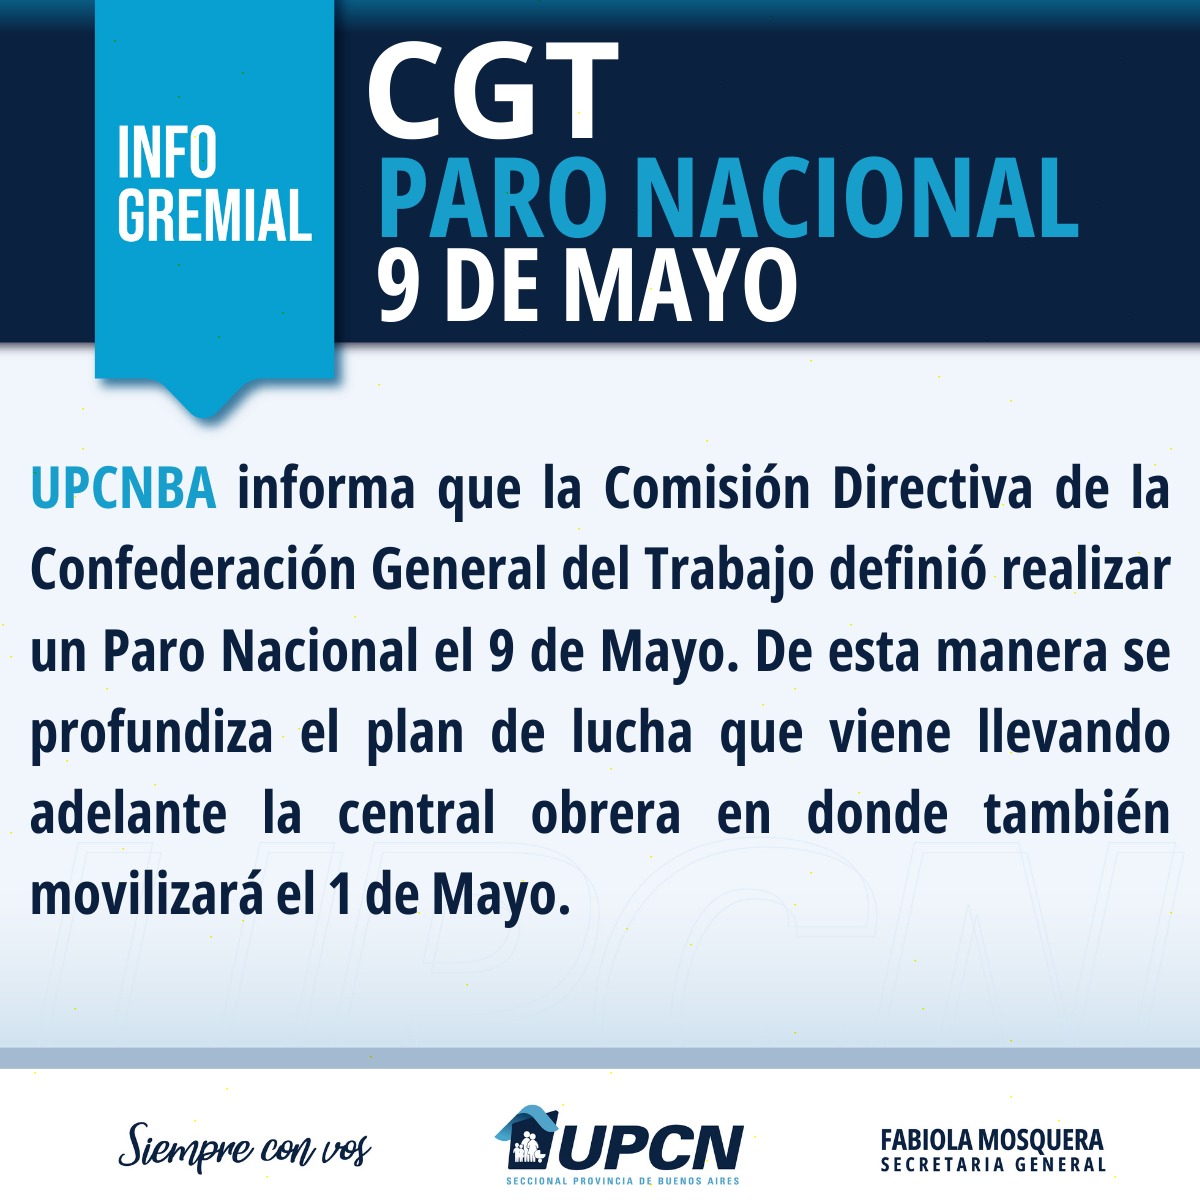 #CGT
#Movilización
#1DeMayo
#ParoNacional
#9DeMayo
#UPCNBA
#FabiolaMosqueraSecretariaGeneral